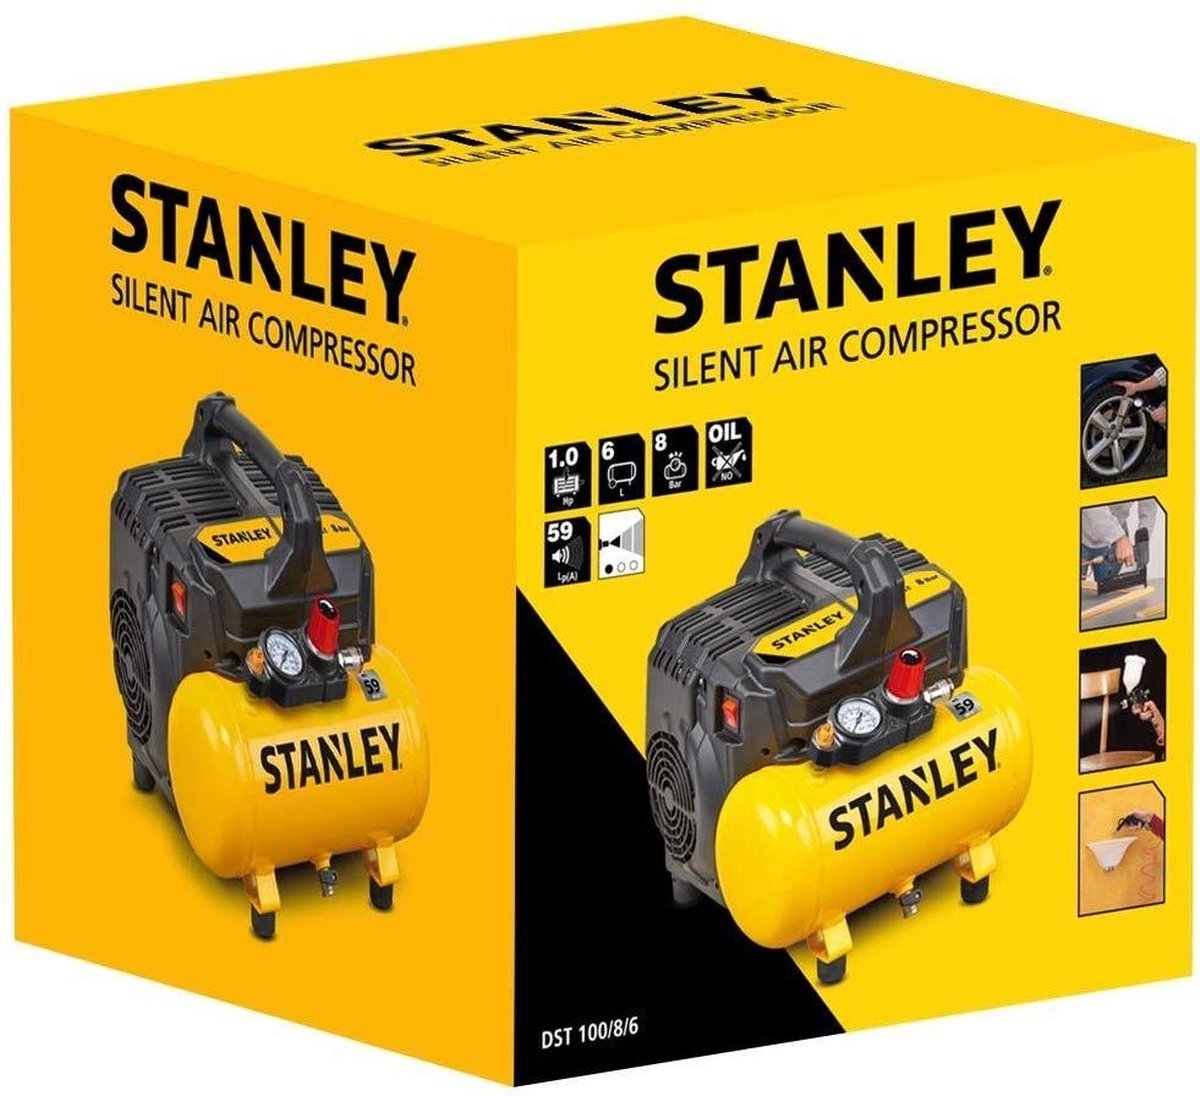 STANLEY Silent Compressor DST 100/8/6 - Olievrij | bol.com